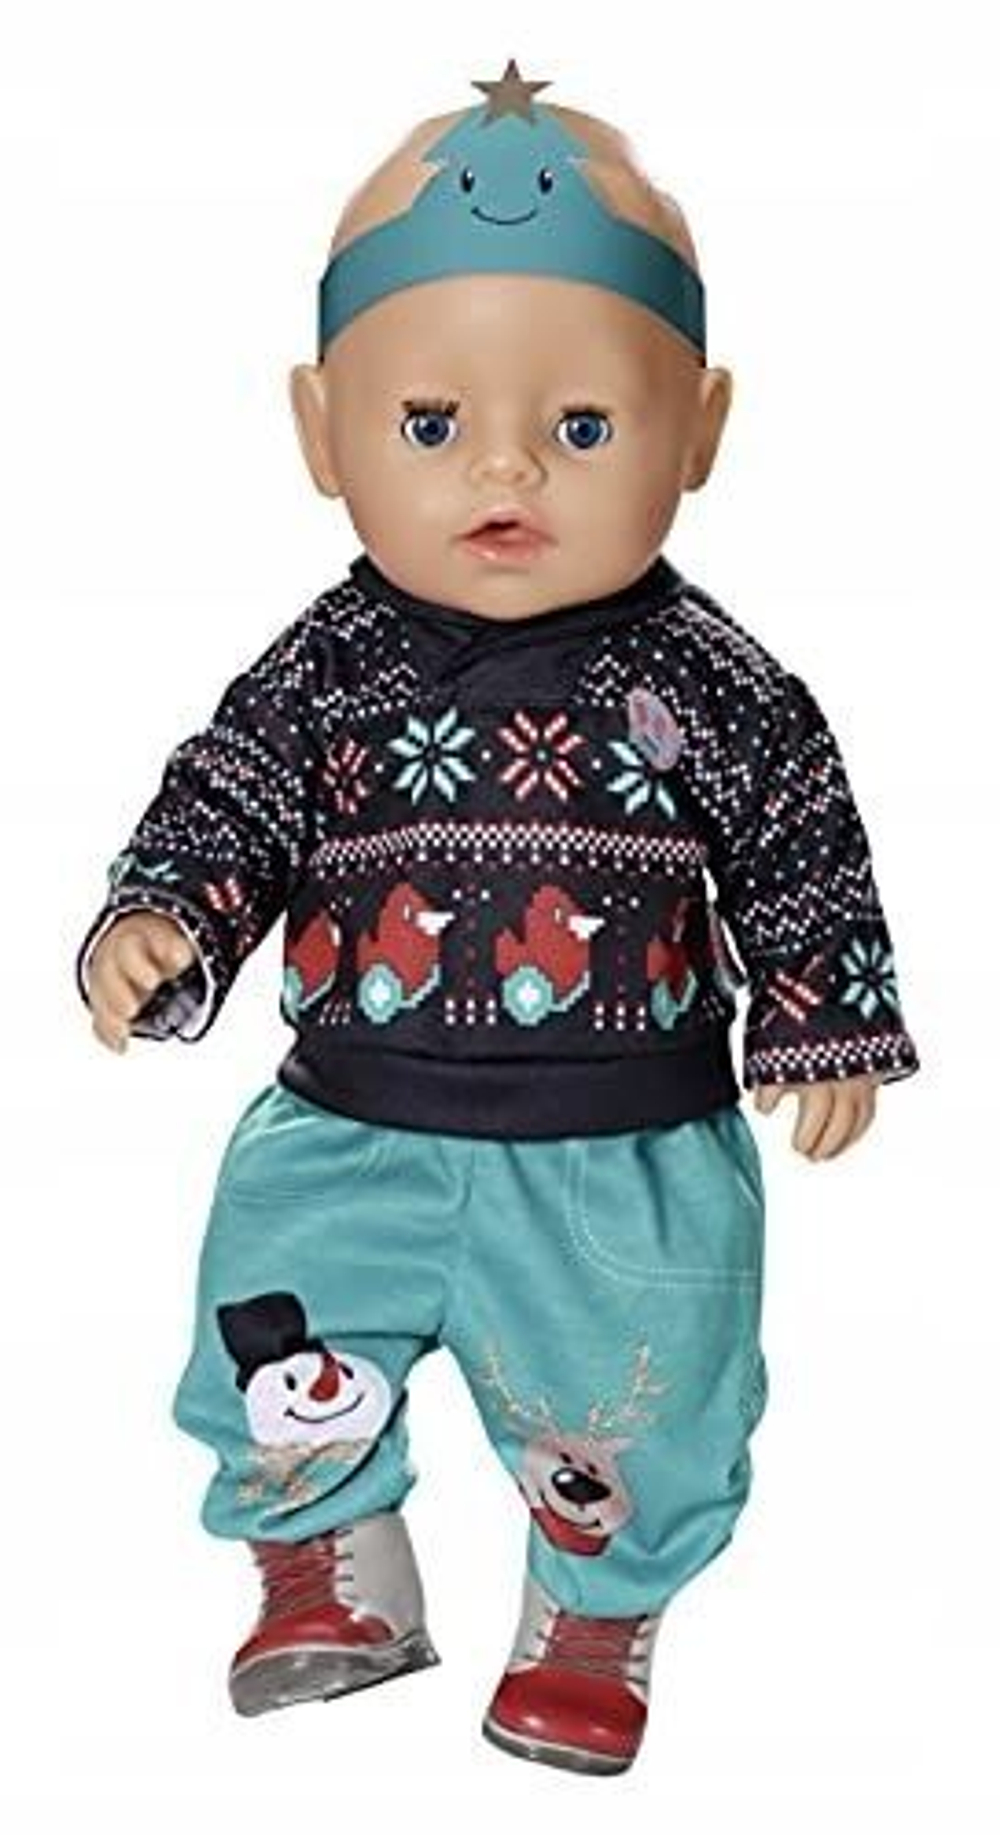 Одежда для куклы Беби Бон: вязаный жакет, шапочка и носочки